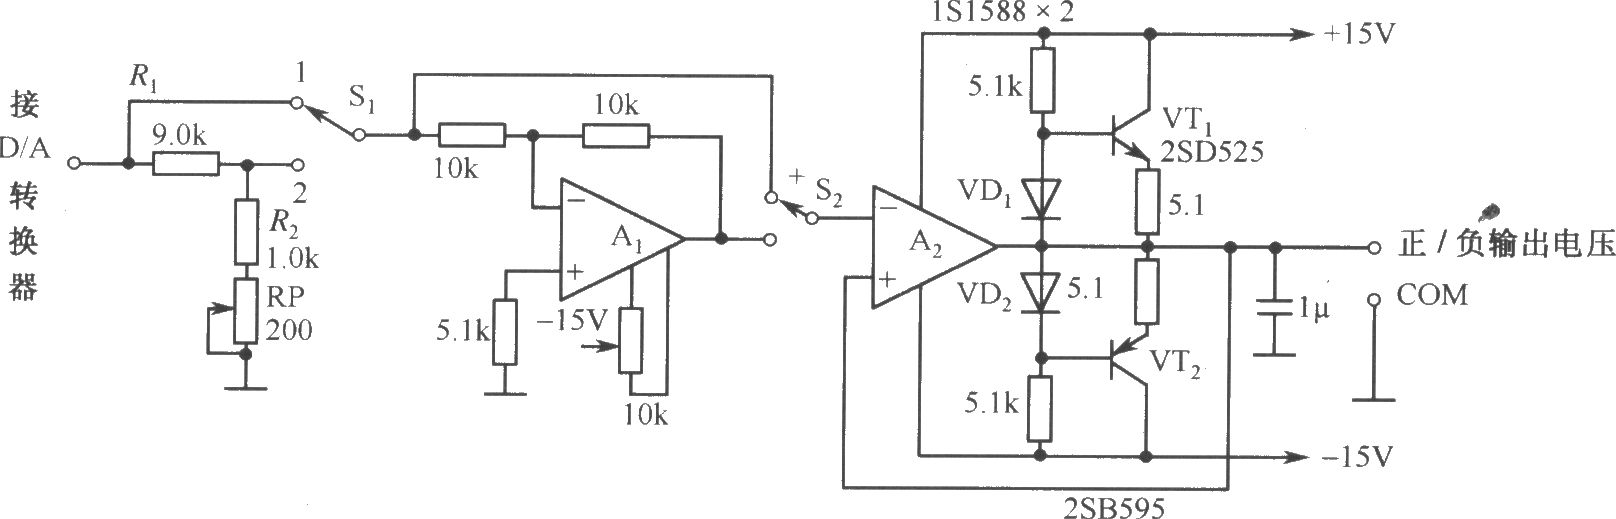 DAC-80-CCD-V构成的自动可逆控制的电源电路